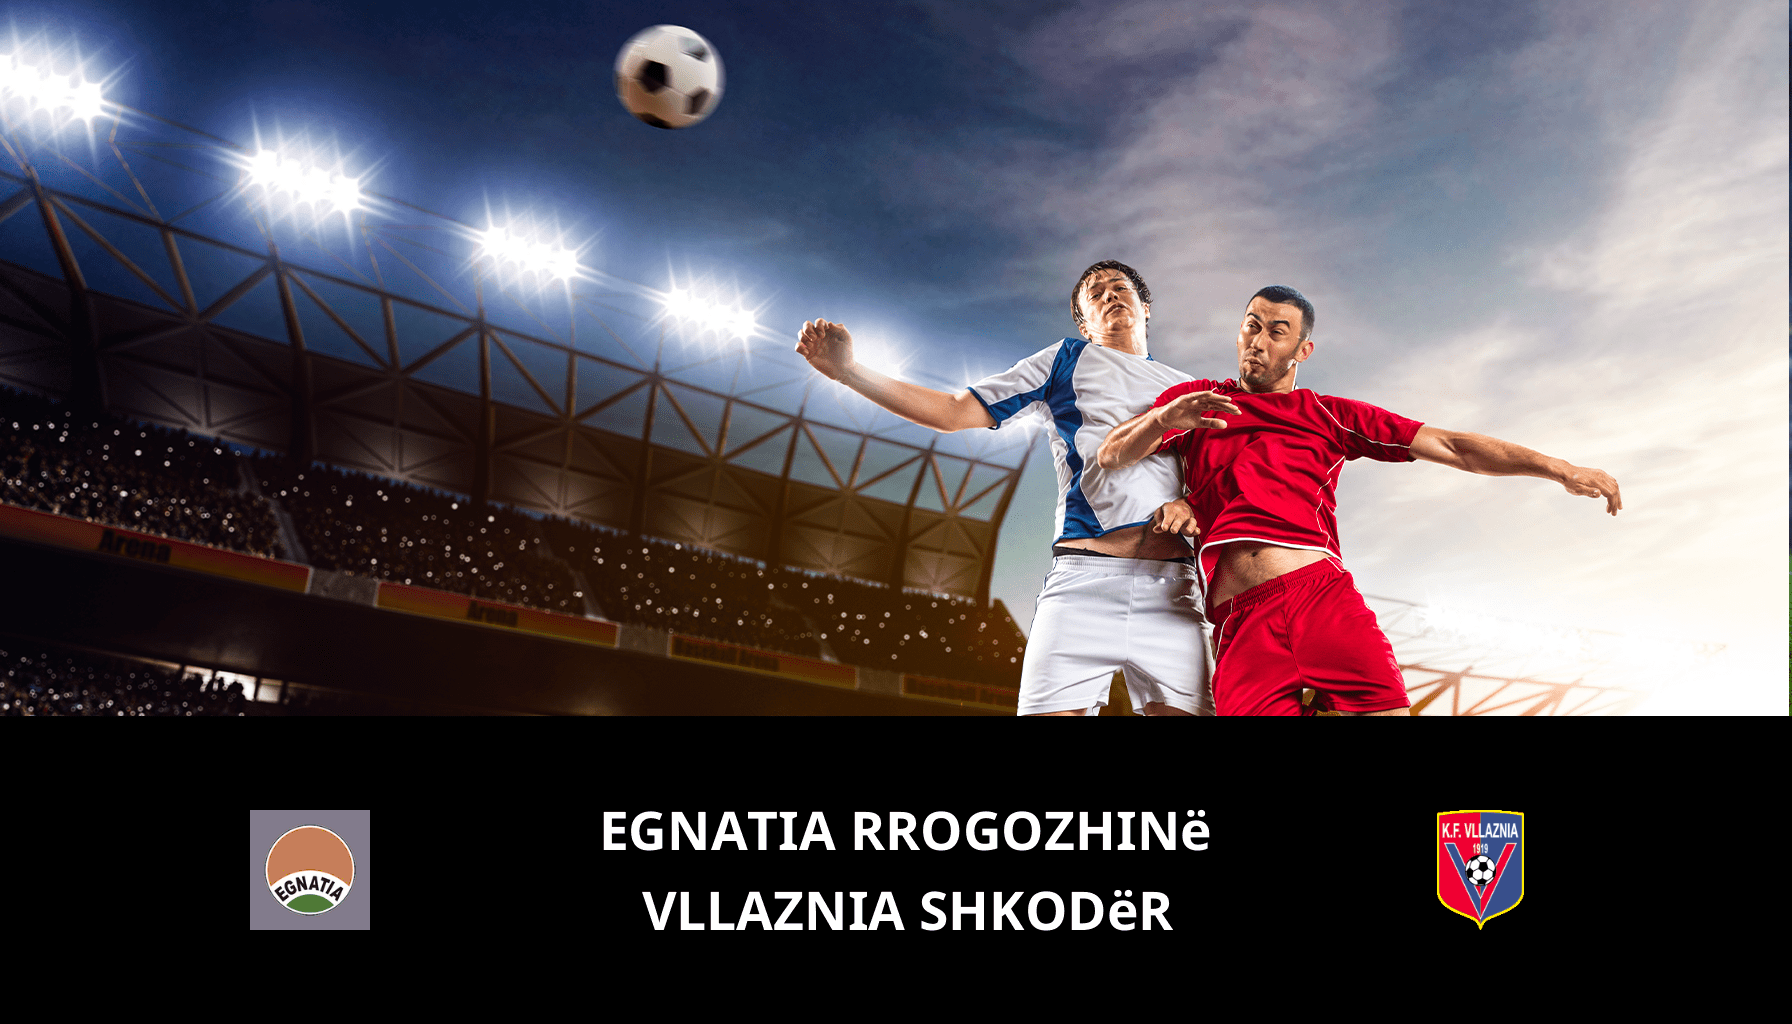 Prediction for Egnatia Rrogozhinë VS Vllaznia Shkodër on 02/12/2023 Analysis of the match